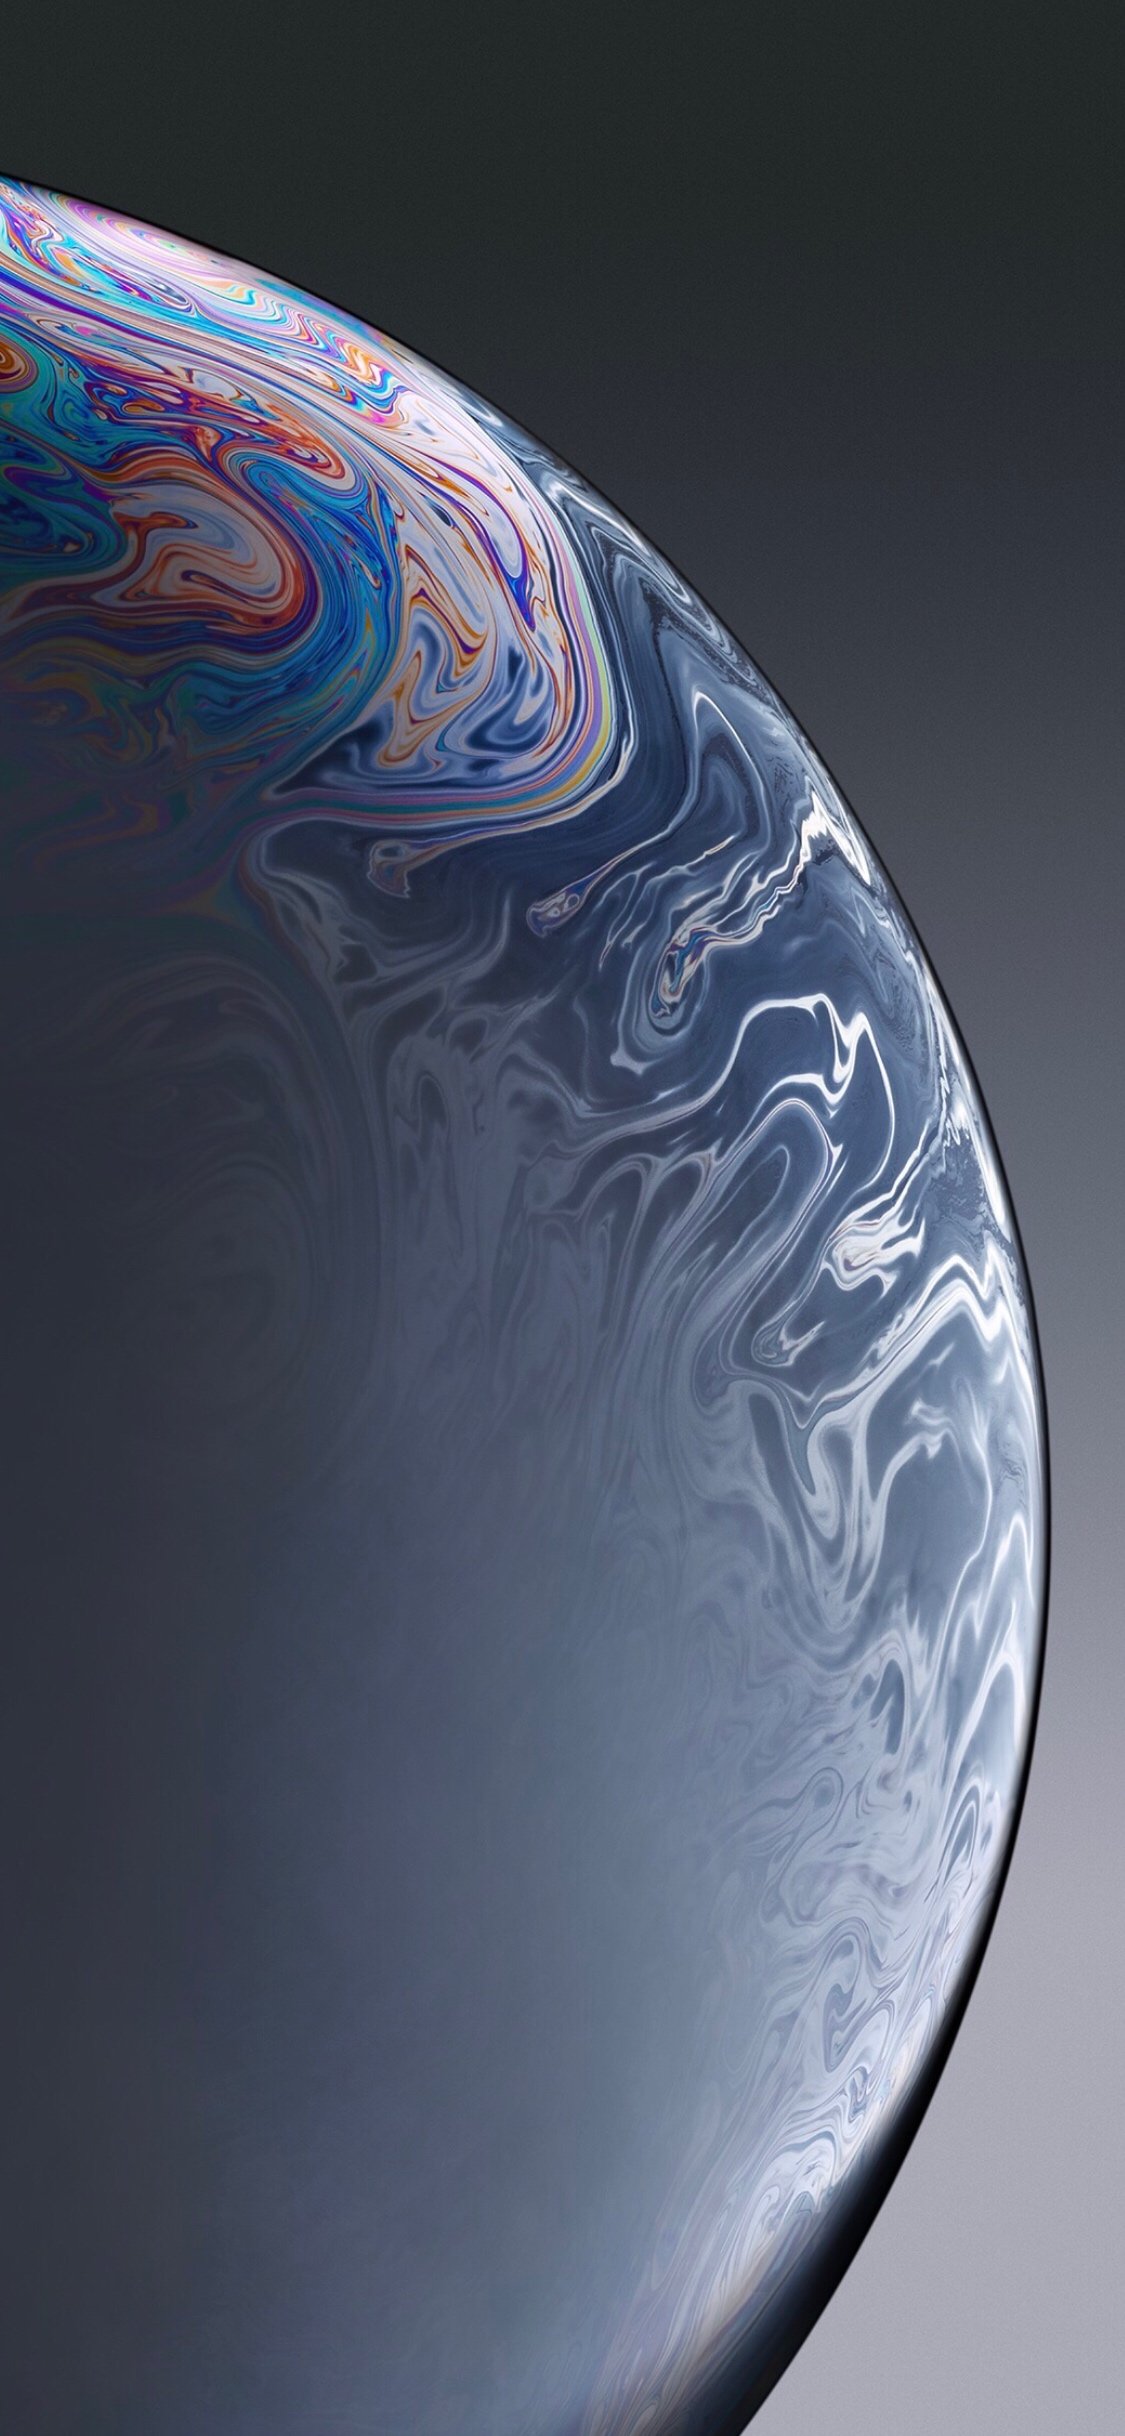  تصویر زمینه گرافیکی 3D با طرح سیاره برای گوشی شیائومی